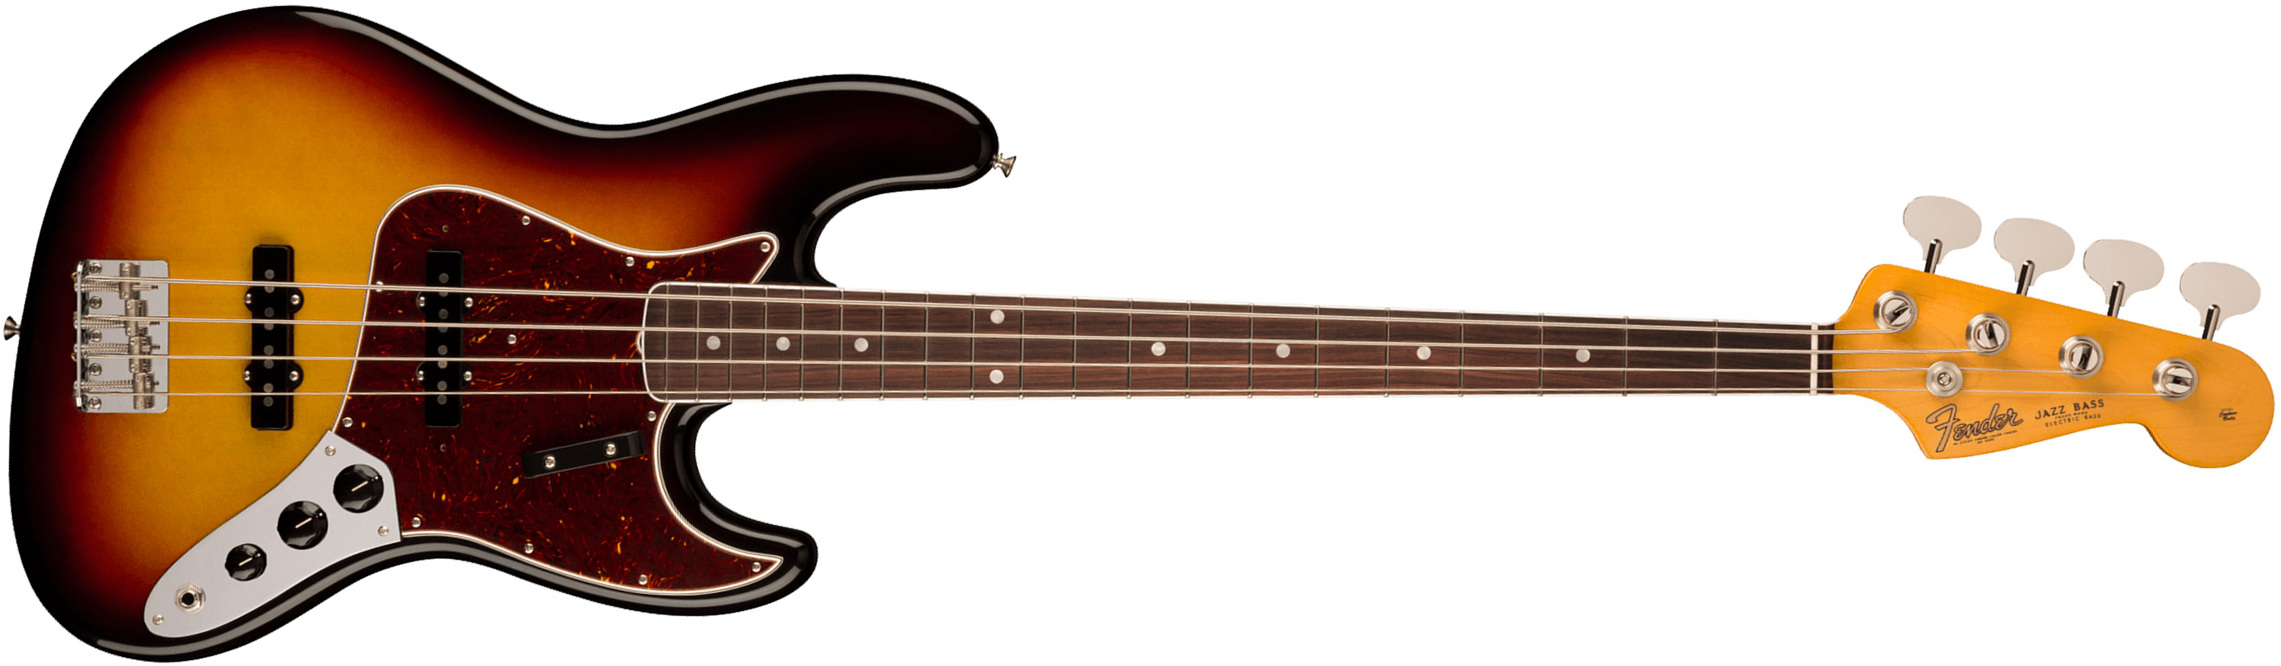 Fender Jazz Bass 1966 American Vintage Ii Usa Rw - 3-color Sunburst - Basse Électrique Solid Body - Main picture